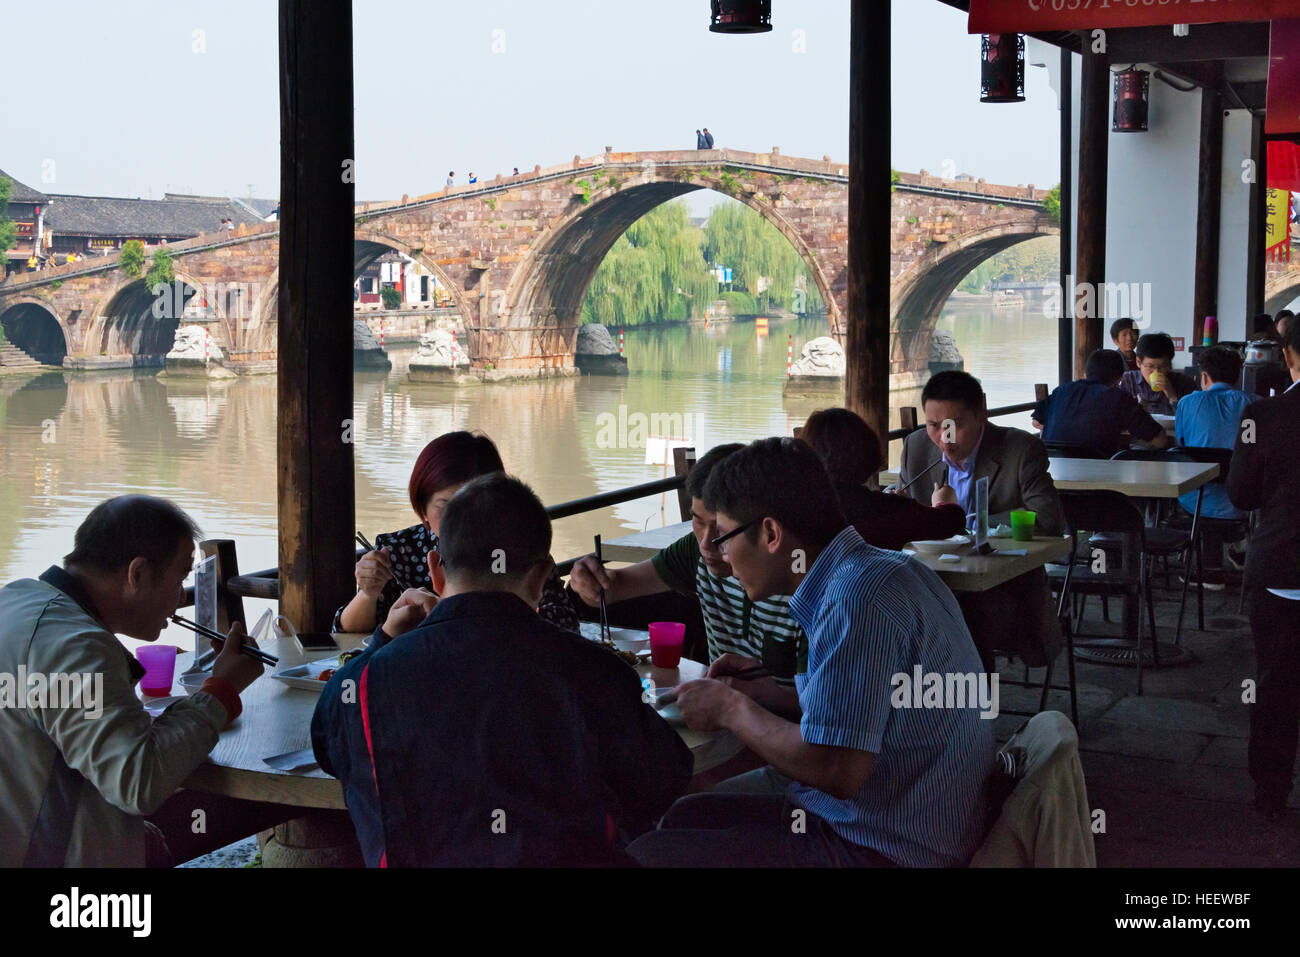 Teahouse along the Grand Canal, Guangji Bridge in the background, Tangqi Ancient Town, Hangzhou, Zhejiang Province, China Stock Photo